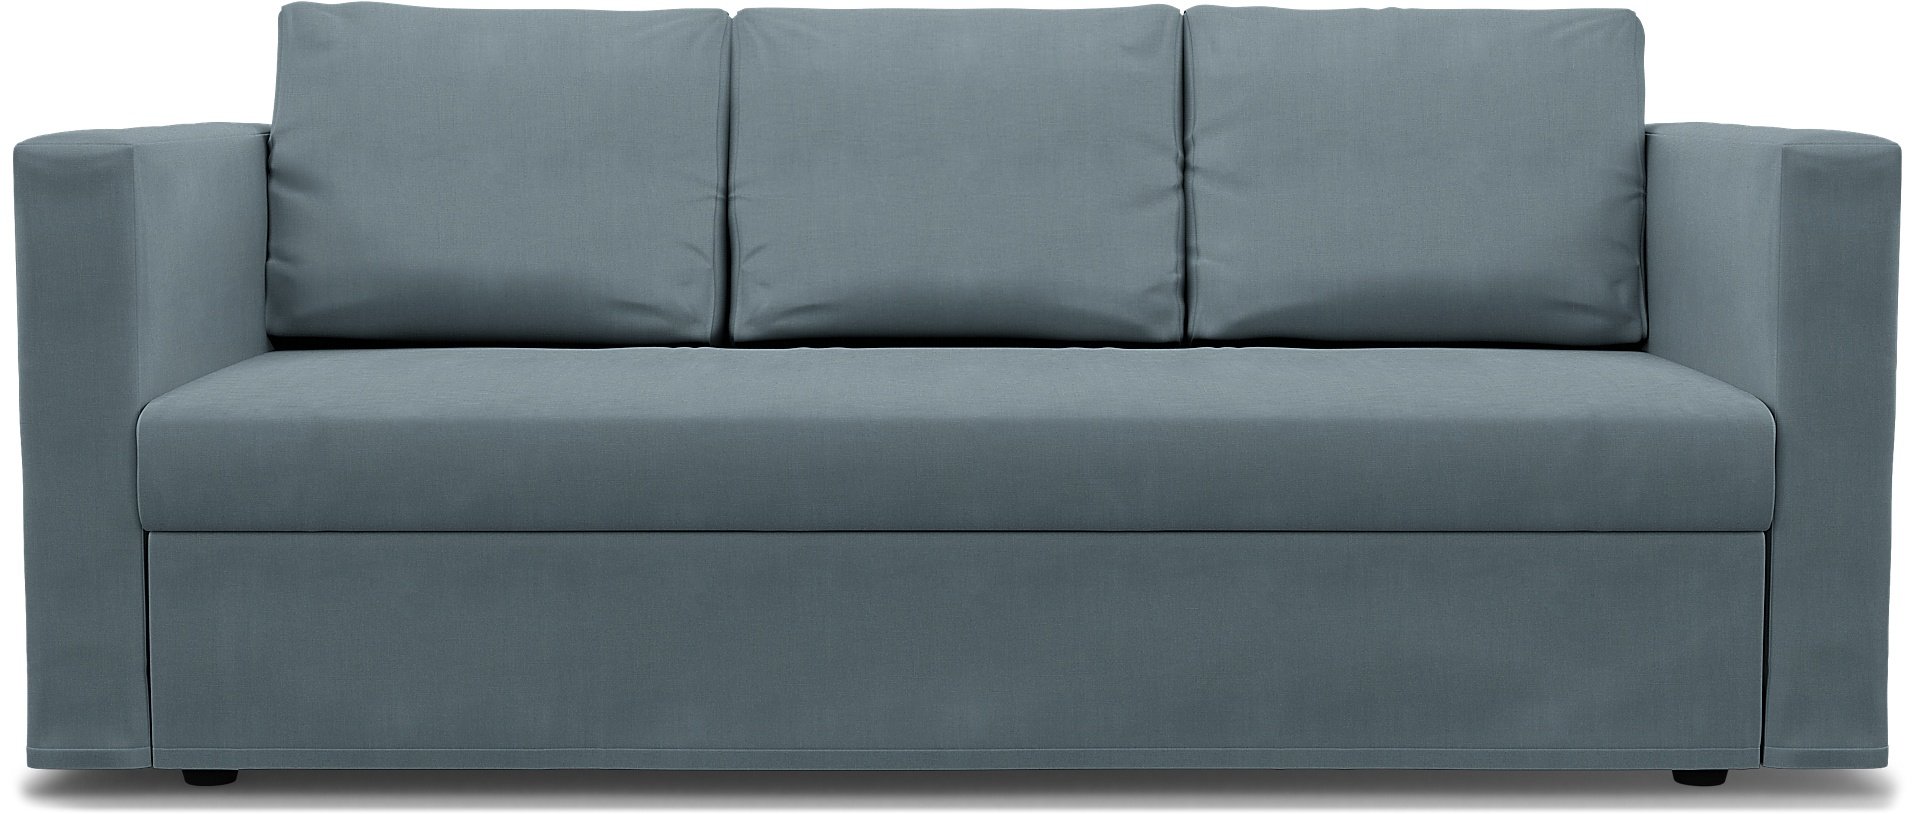 IKEA - Friheten 3 Seater Sofa Bed Cover, Dusk, Linen - Bemz